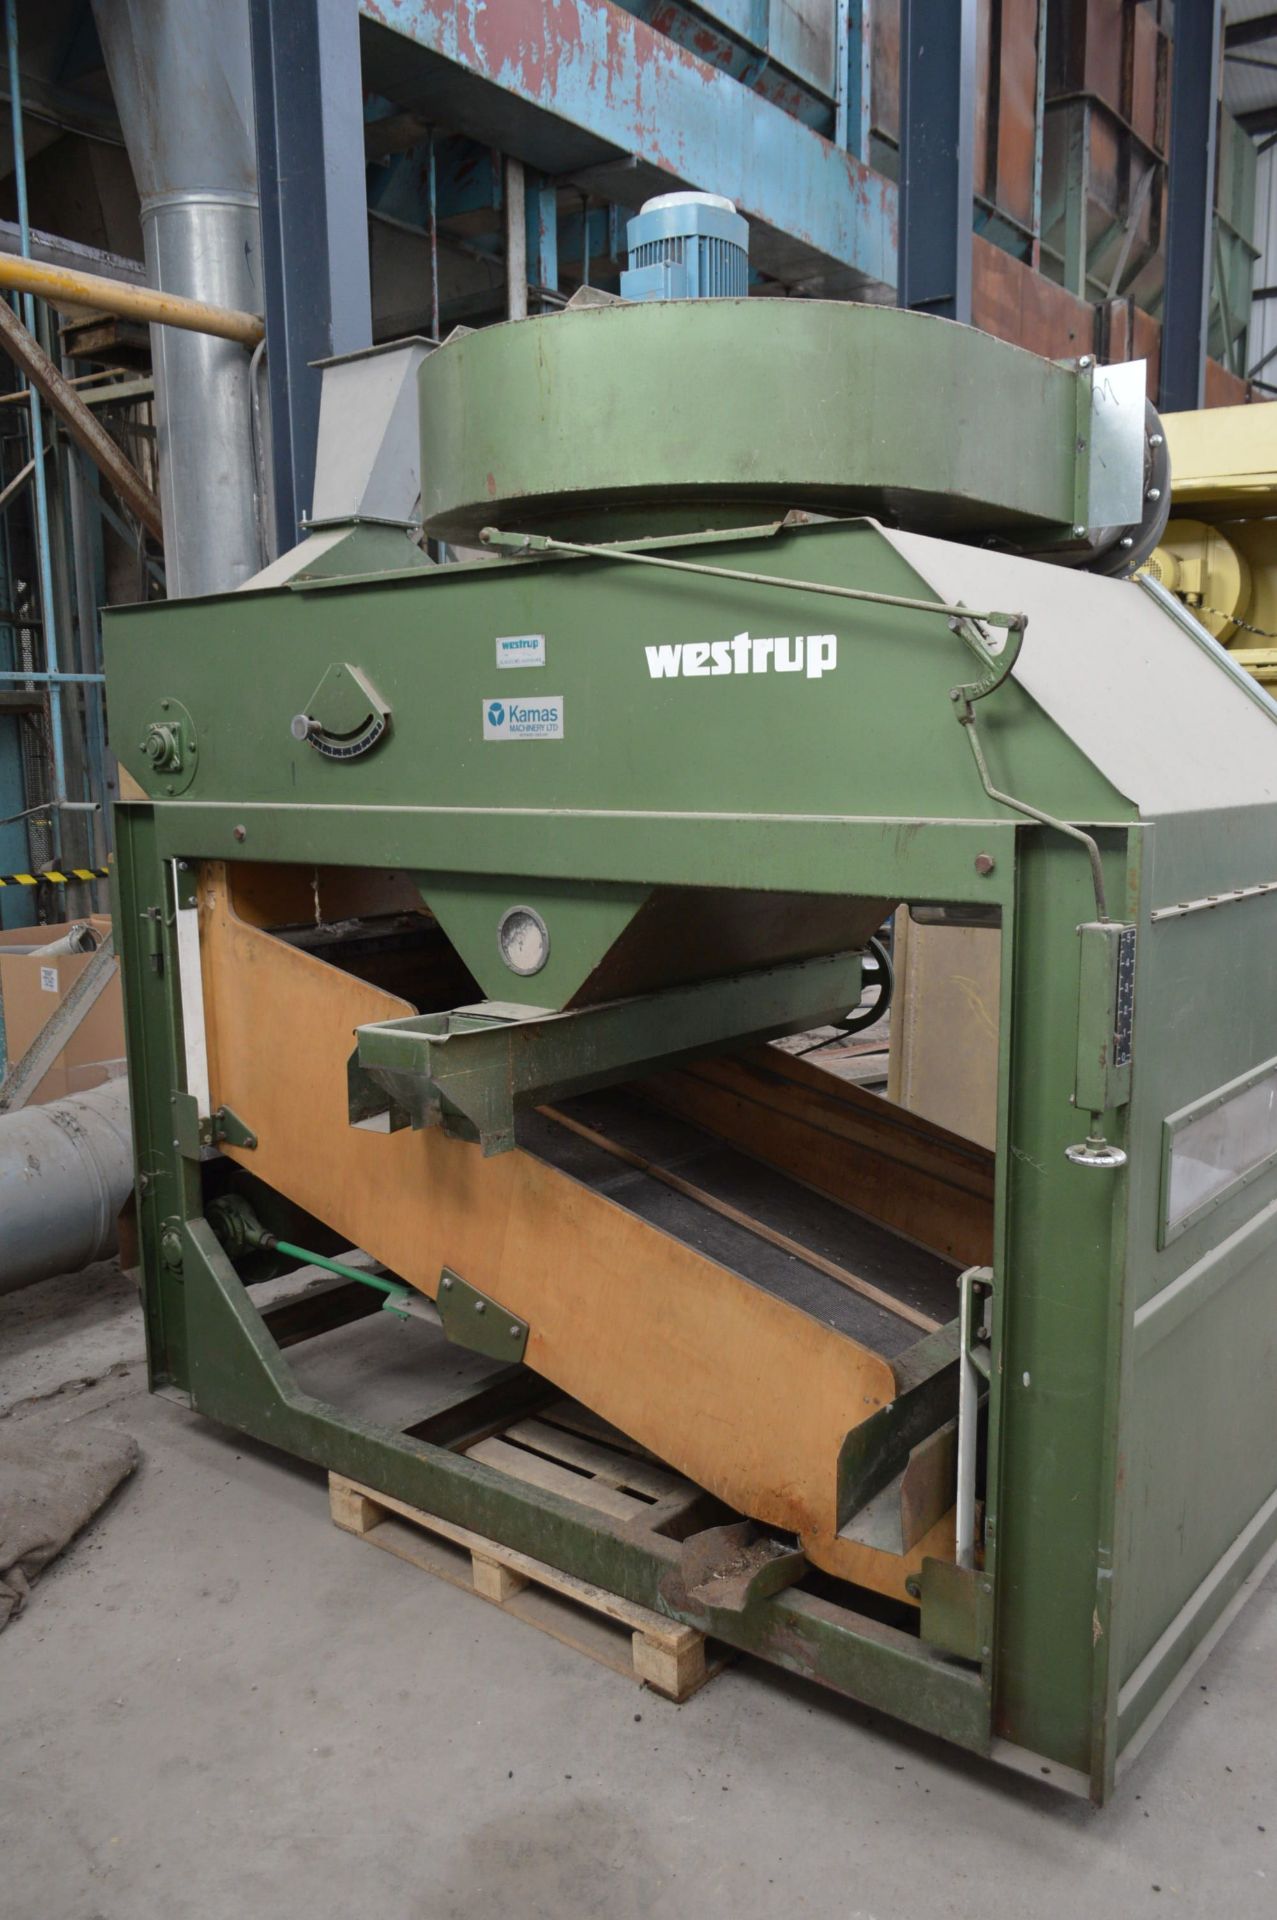 Westrup SAB 1000 GRAIN CLEANER, serial no. 82034 – - Image 2 of 3